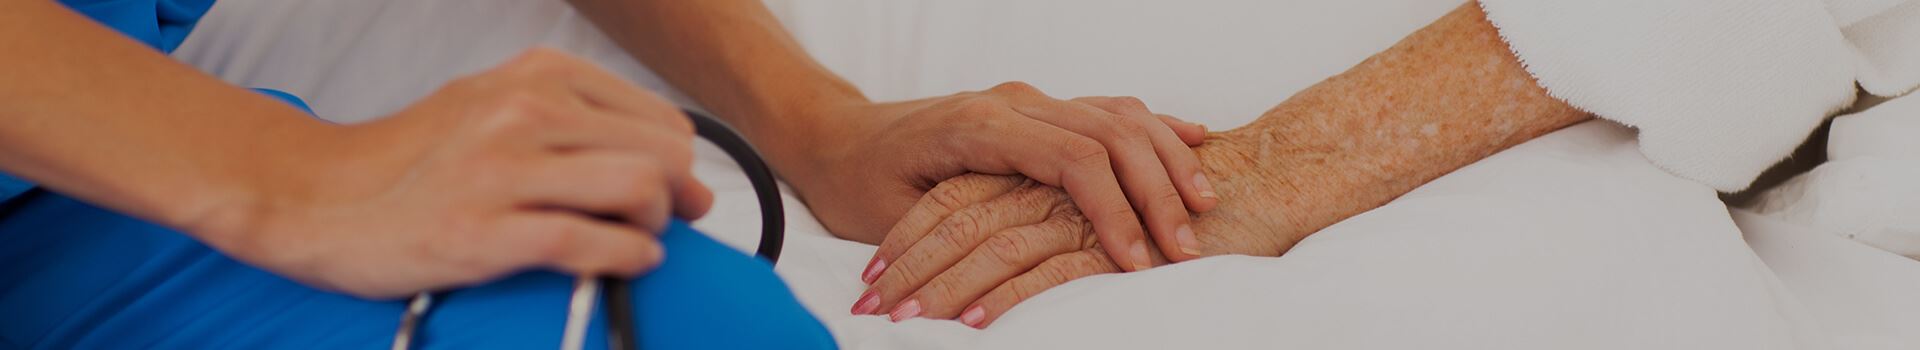 nurse holding elderly patient's hand